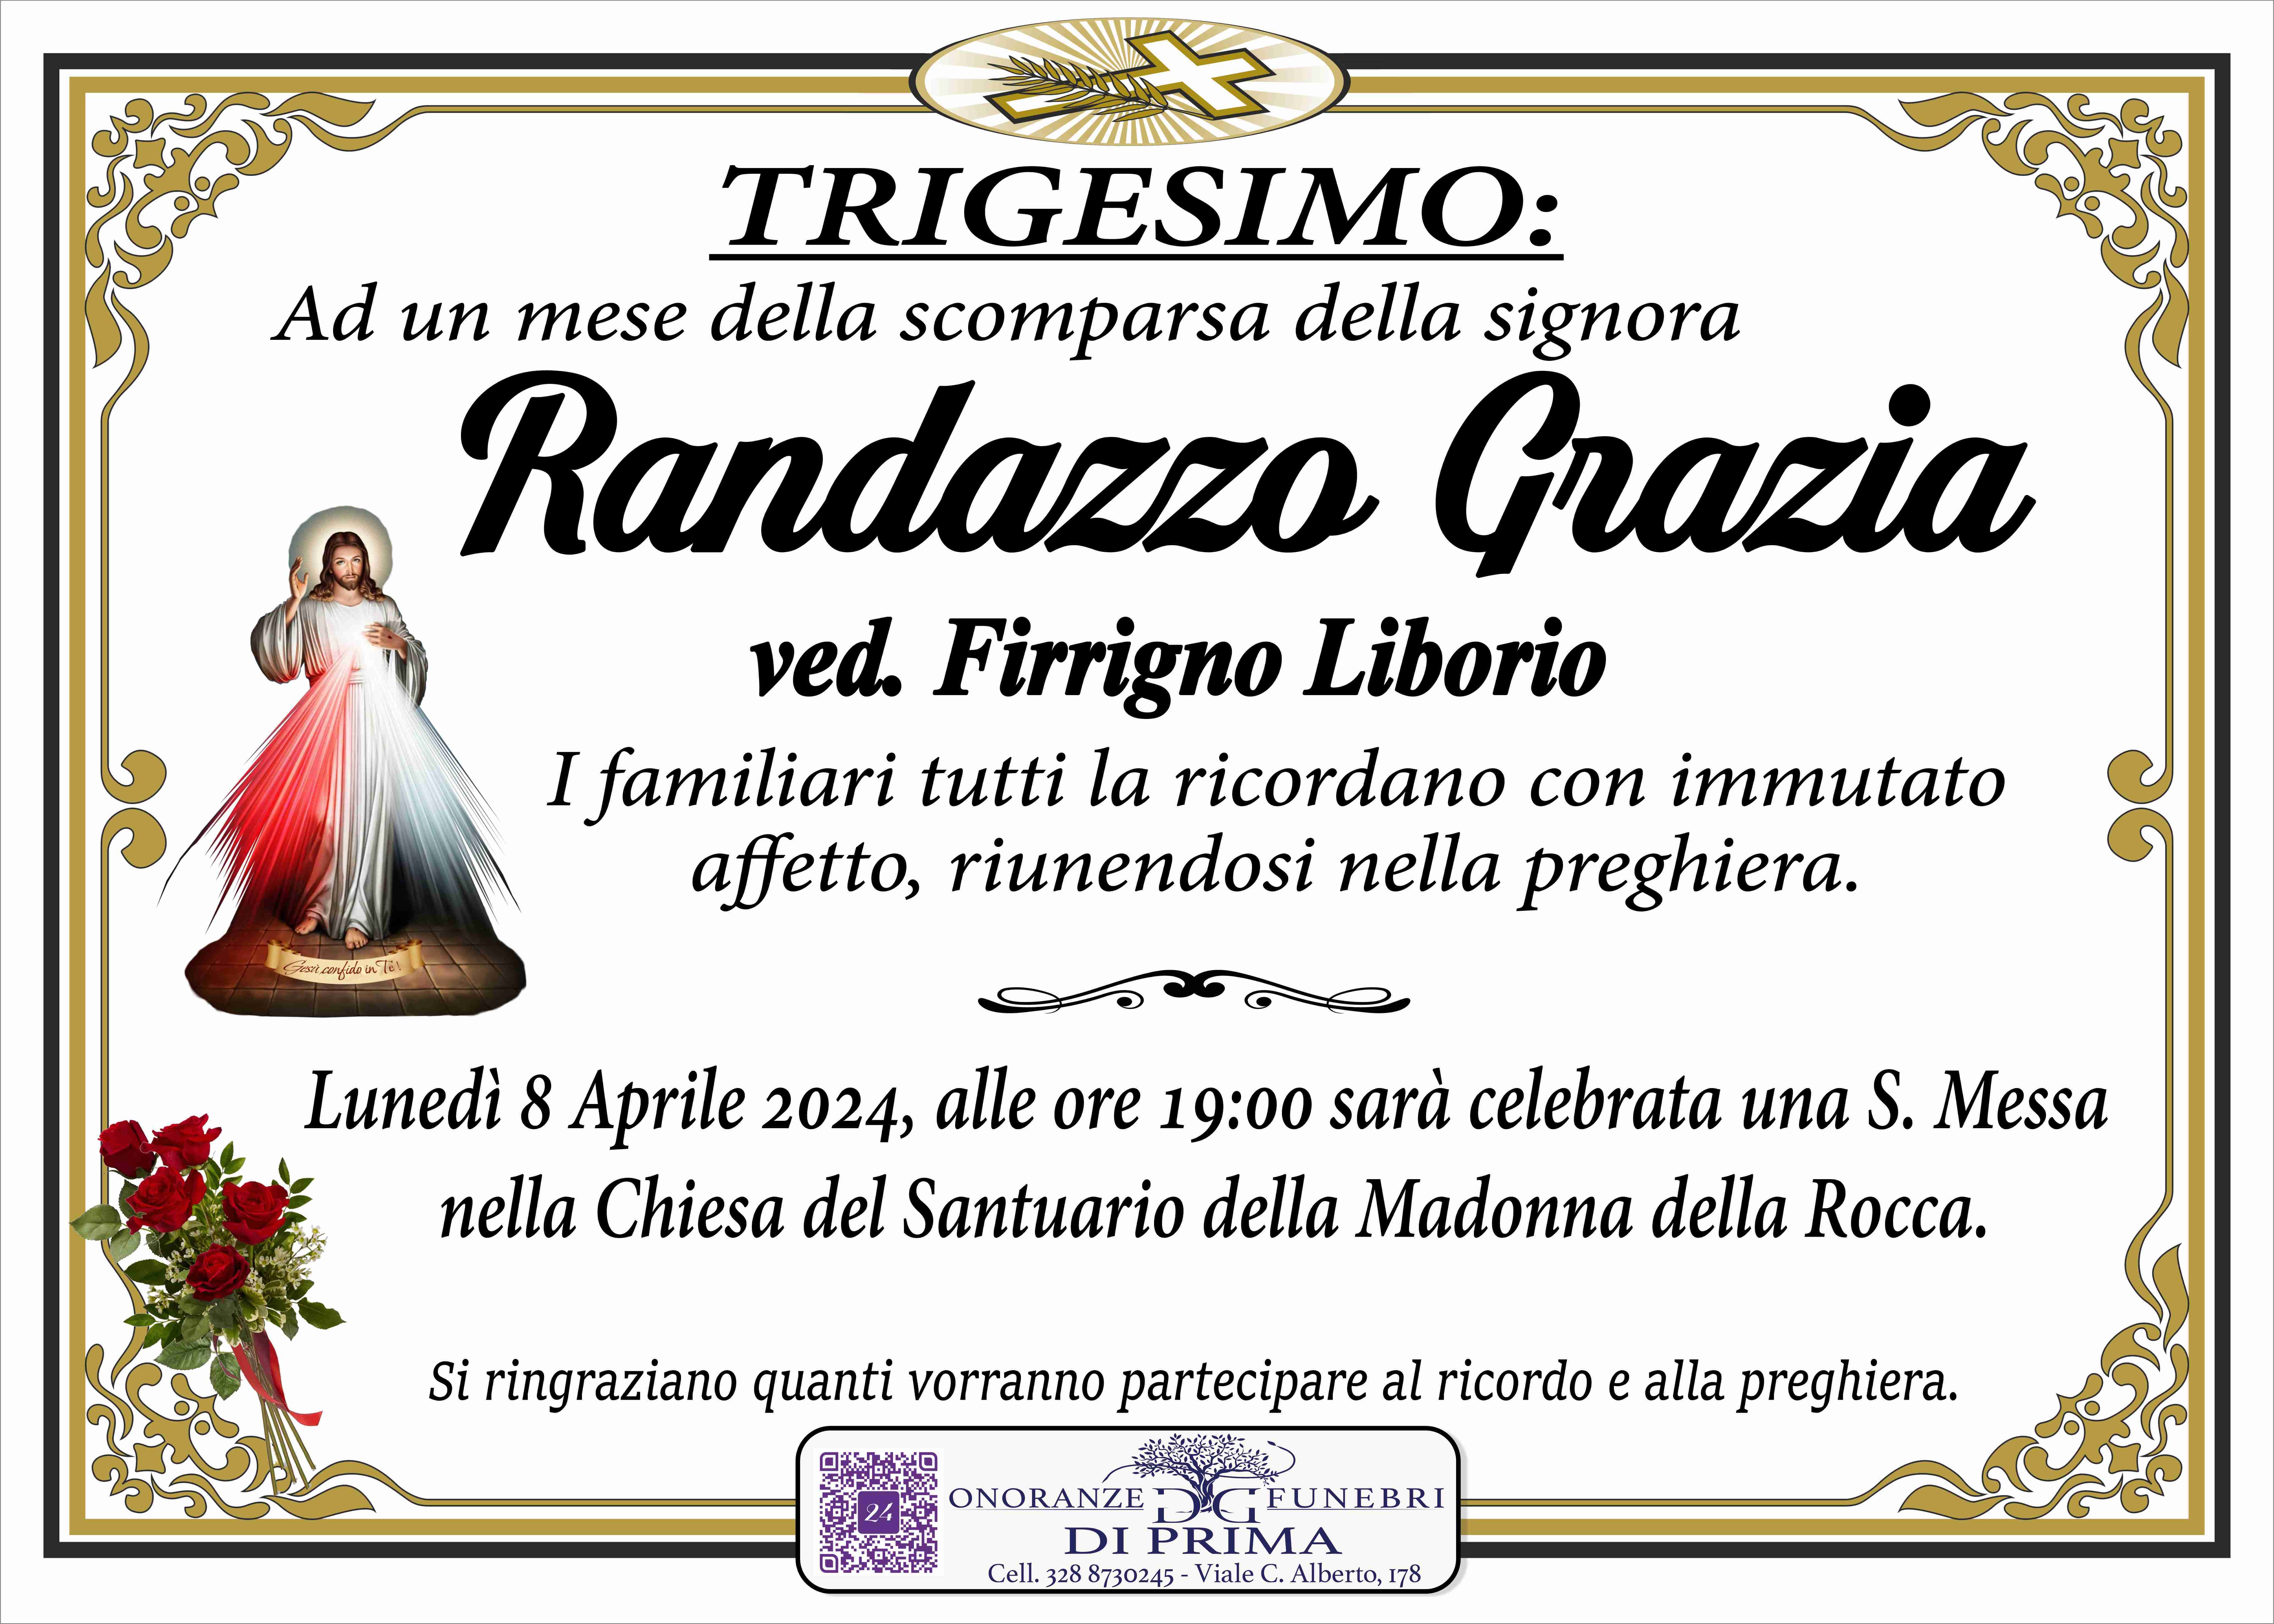 Grazia Randazzo